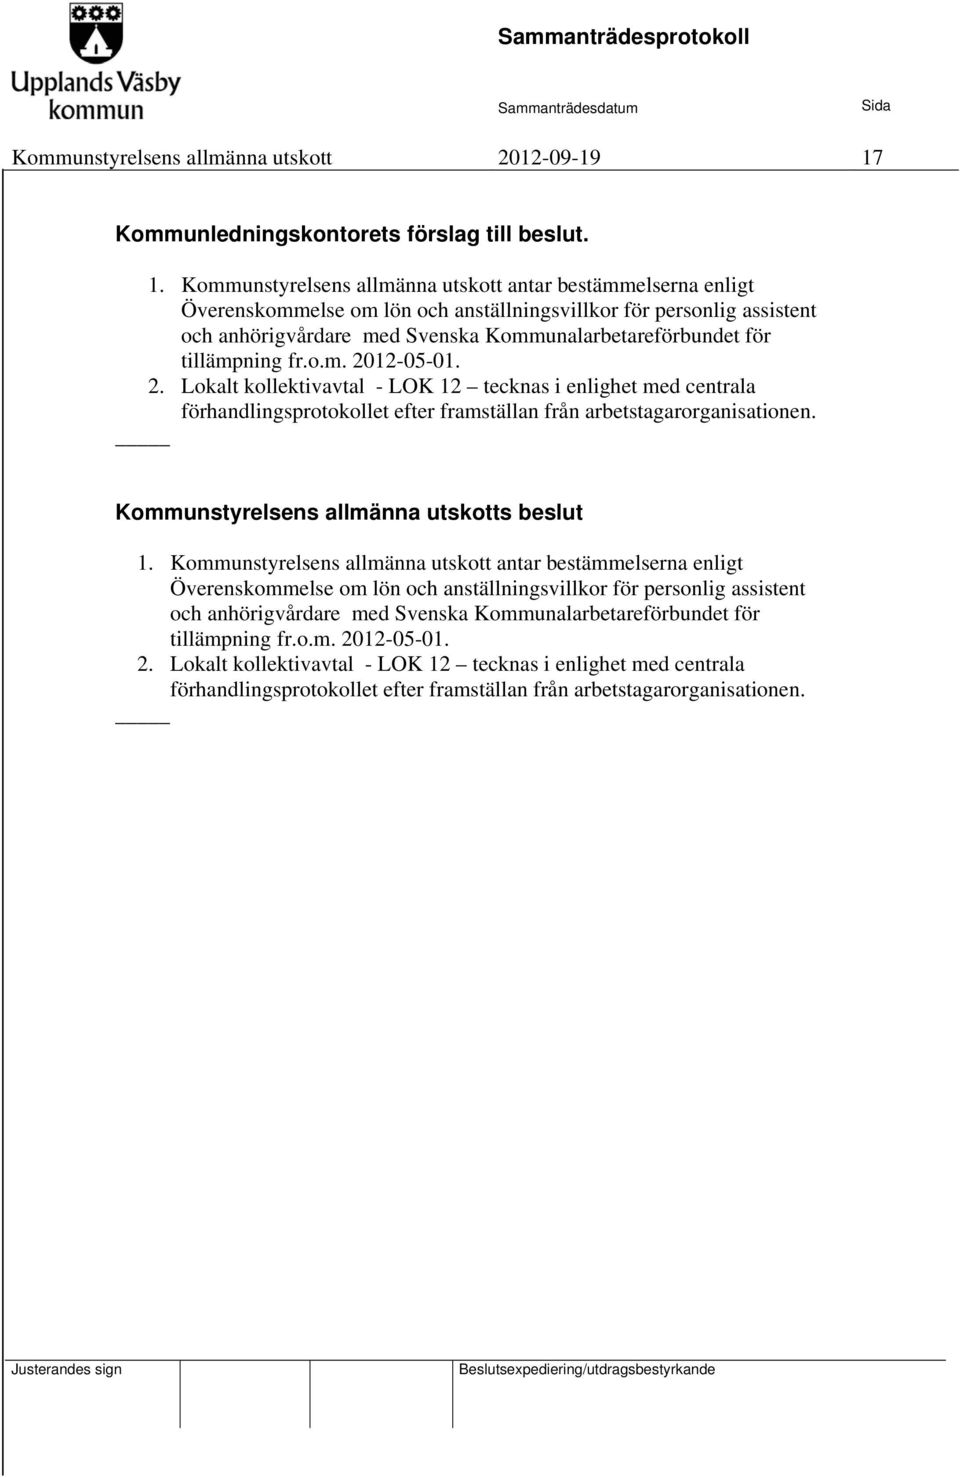 Kommunstyrelsens allmänna utskott antar bestämmelserna enligt Överenskommelse om lön och anställningsvillkor för personlig assistent och anhörigvårdare med Svenska Kommunalarbetareförbundet för